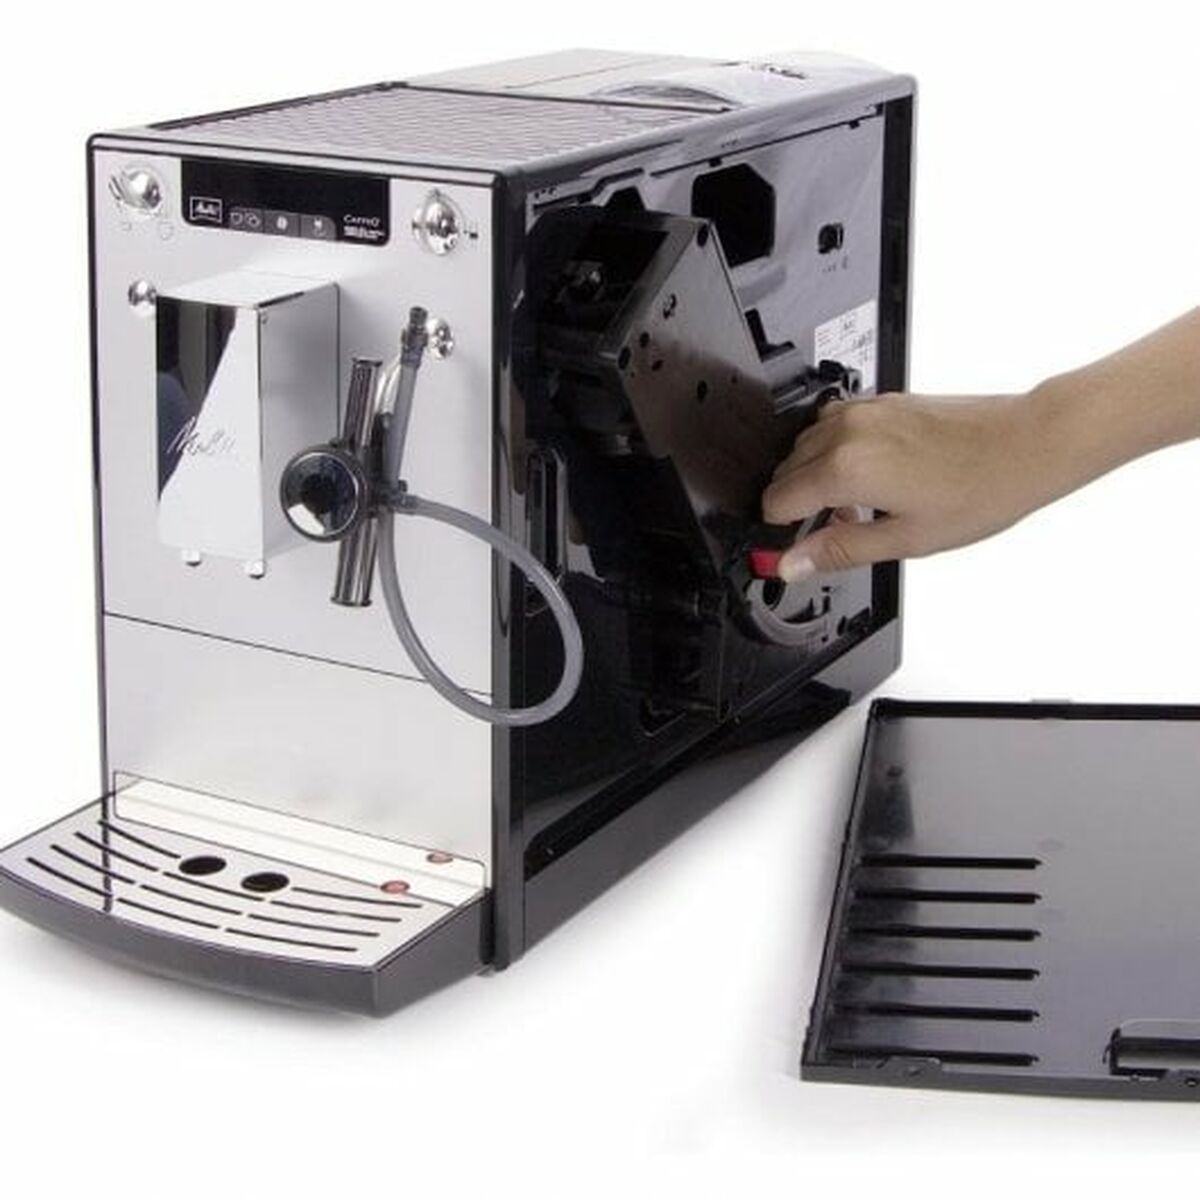 Melitta Kaffeevollautomat 6679170 Silber 1400 W 1450 W 15 bar 1,2 L